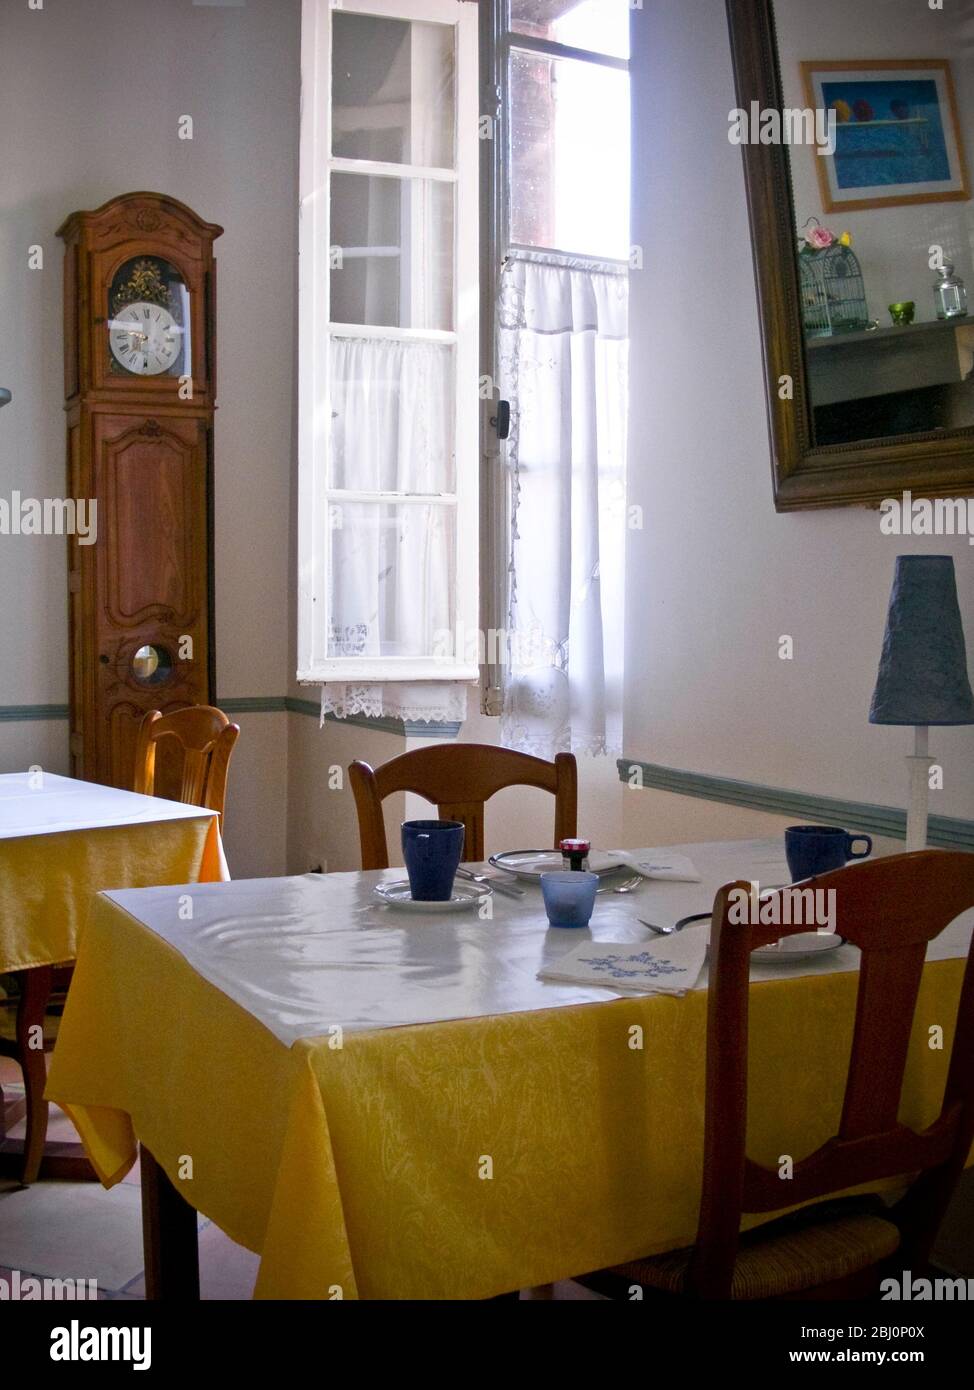 Innen. Speisesaal des charmanten Hotels in Rieumes, Südfrankreich, mit Tischen für das Frühstück - Stockfoto